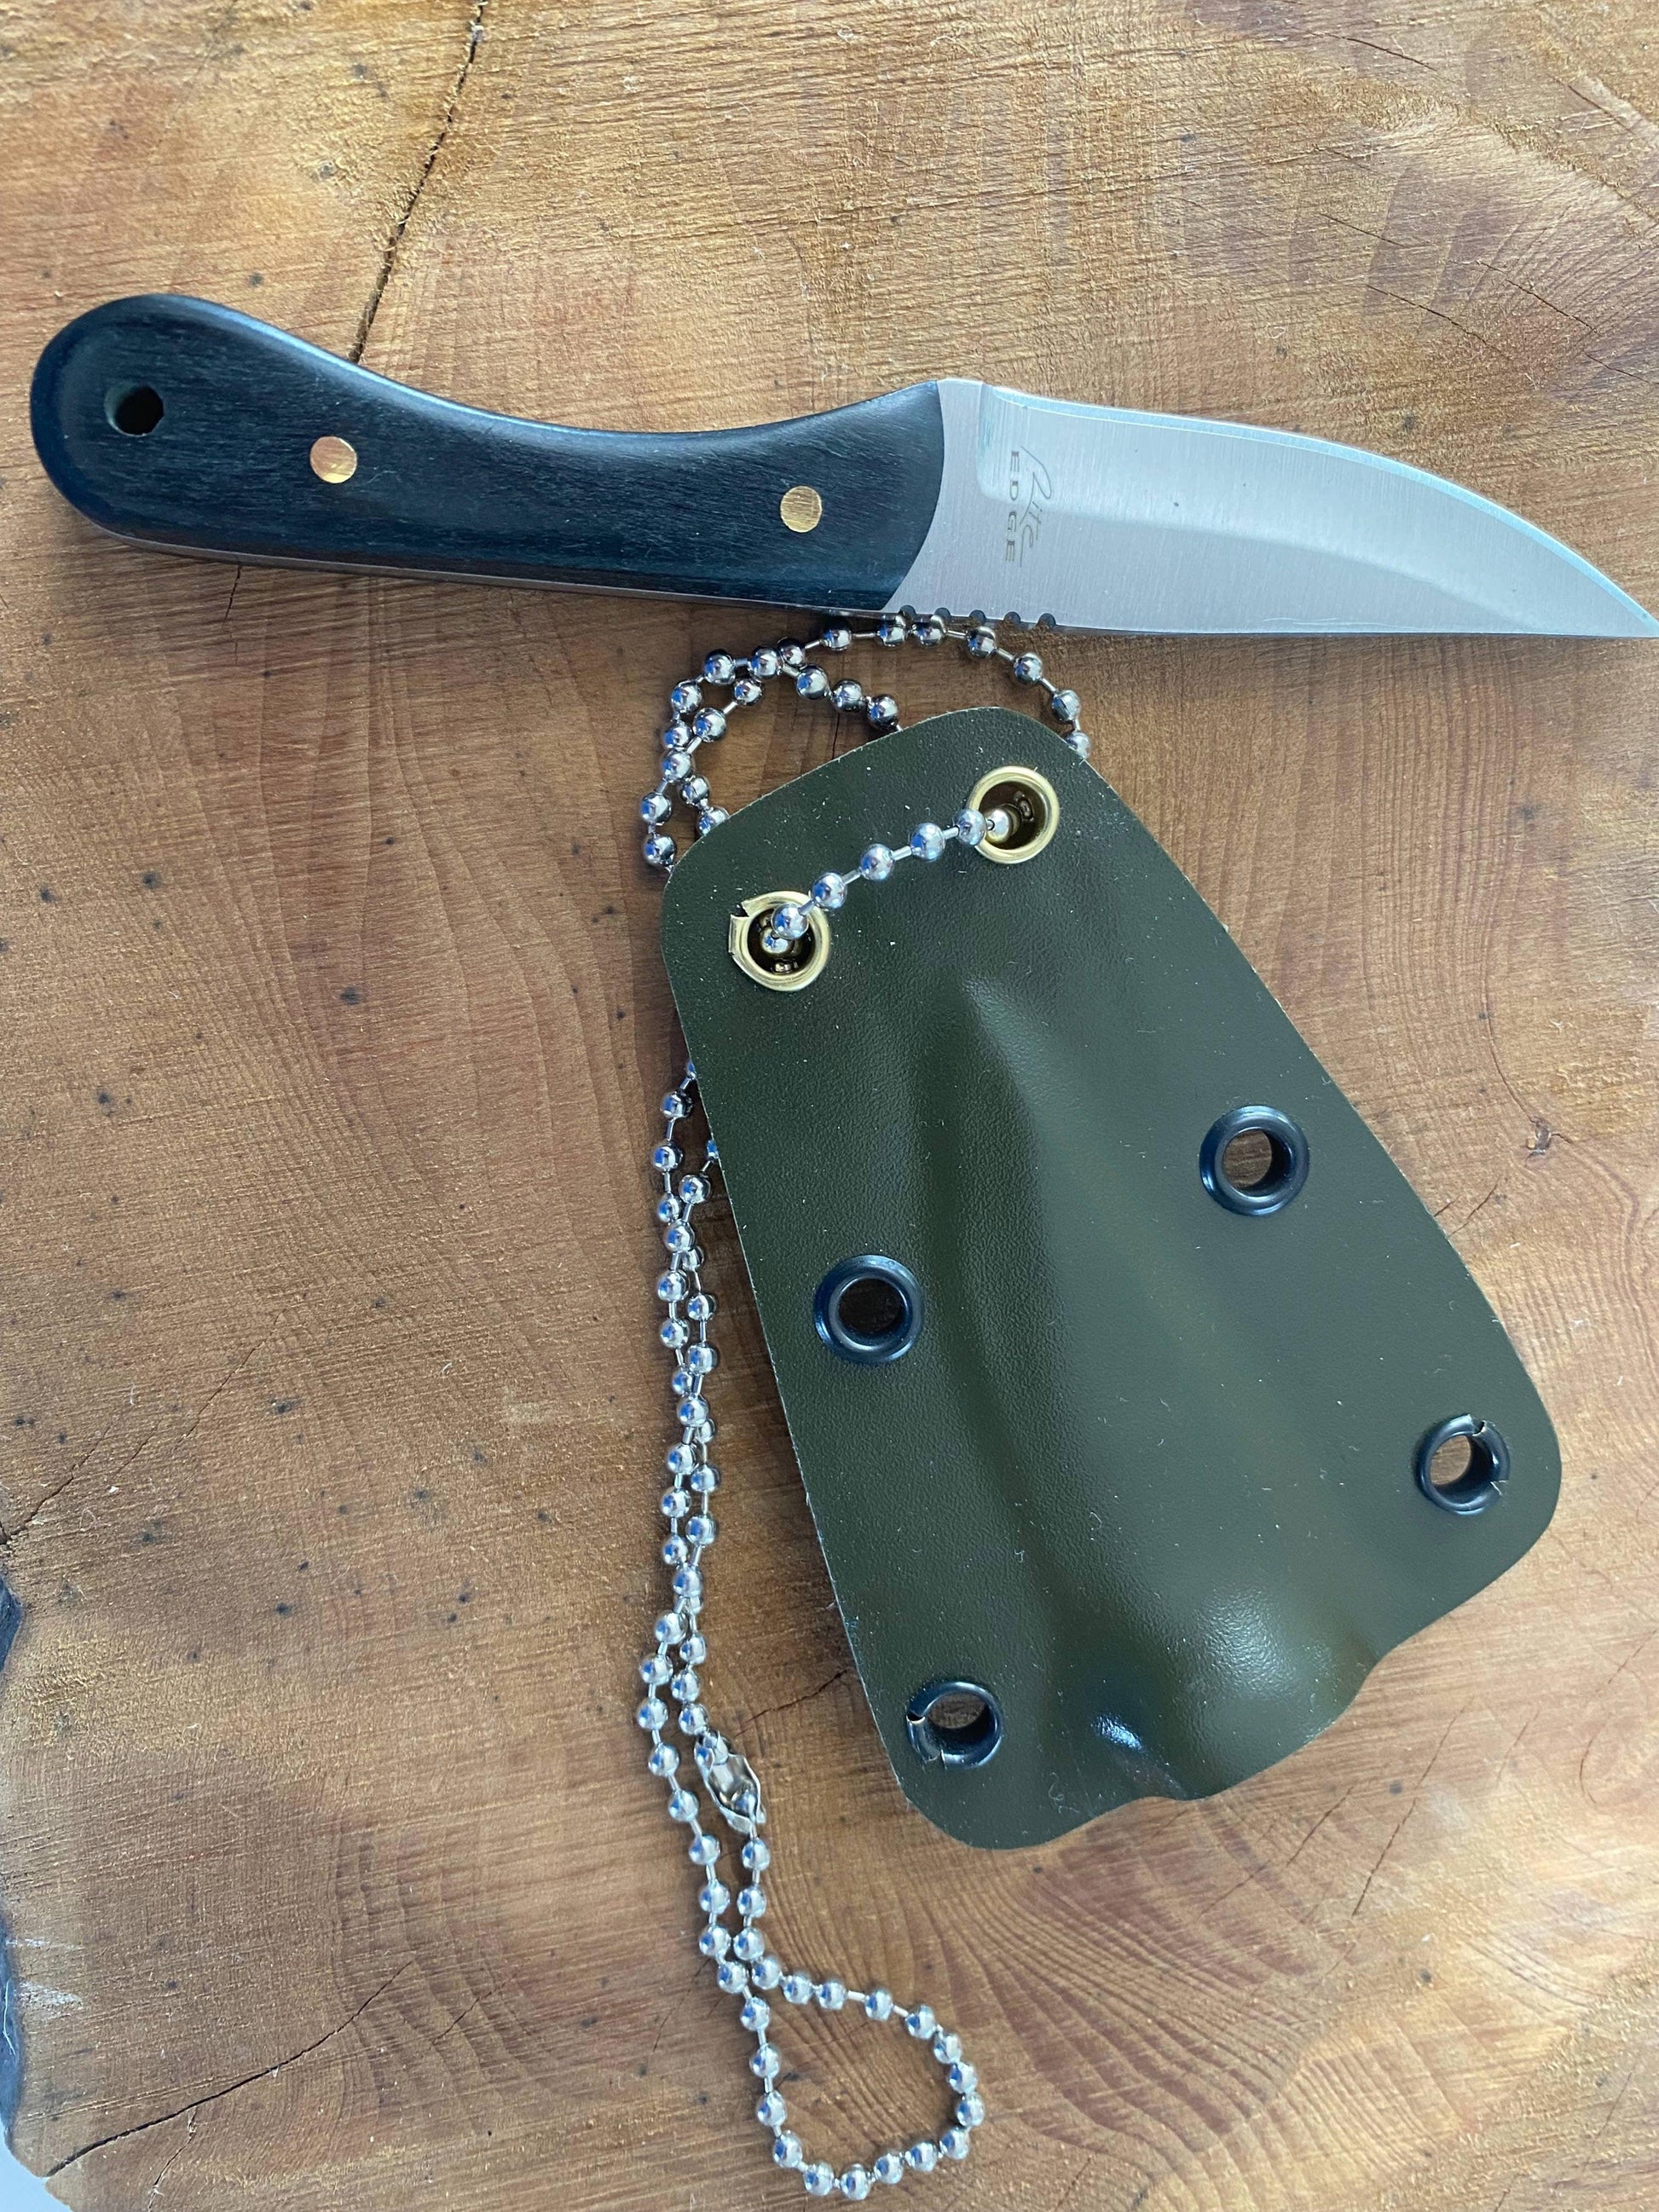 Regular blade Camp Knife - Crowes Knives